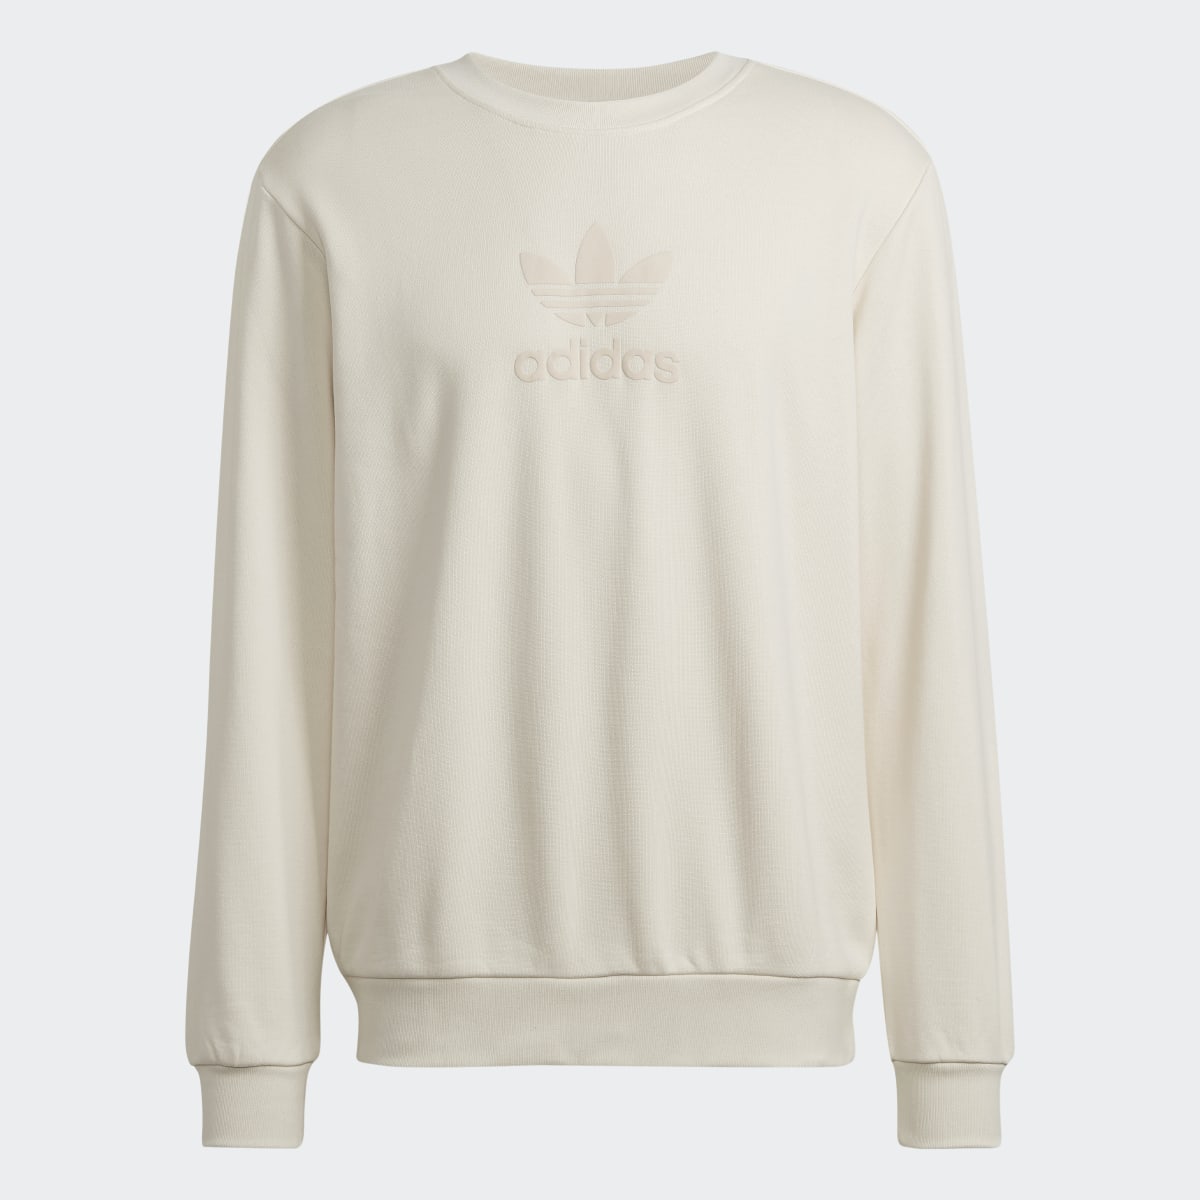 Adidas Trefoil Series Street Sweatshirt. 5